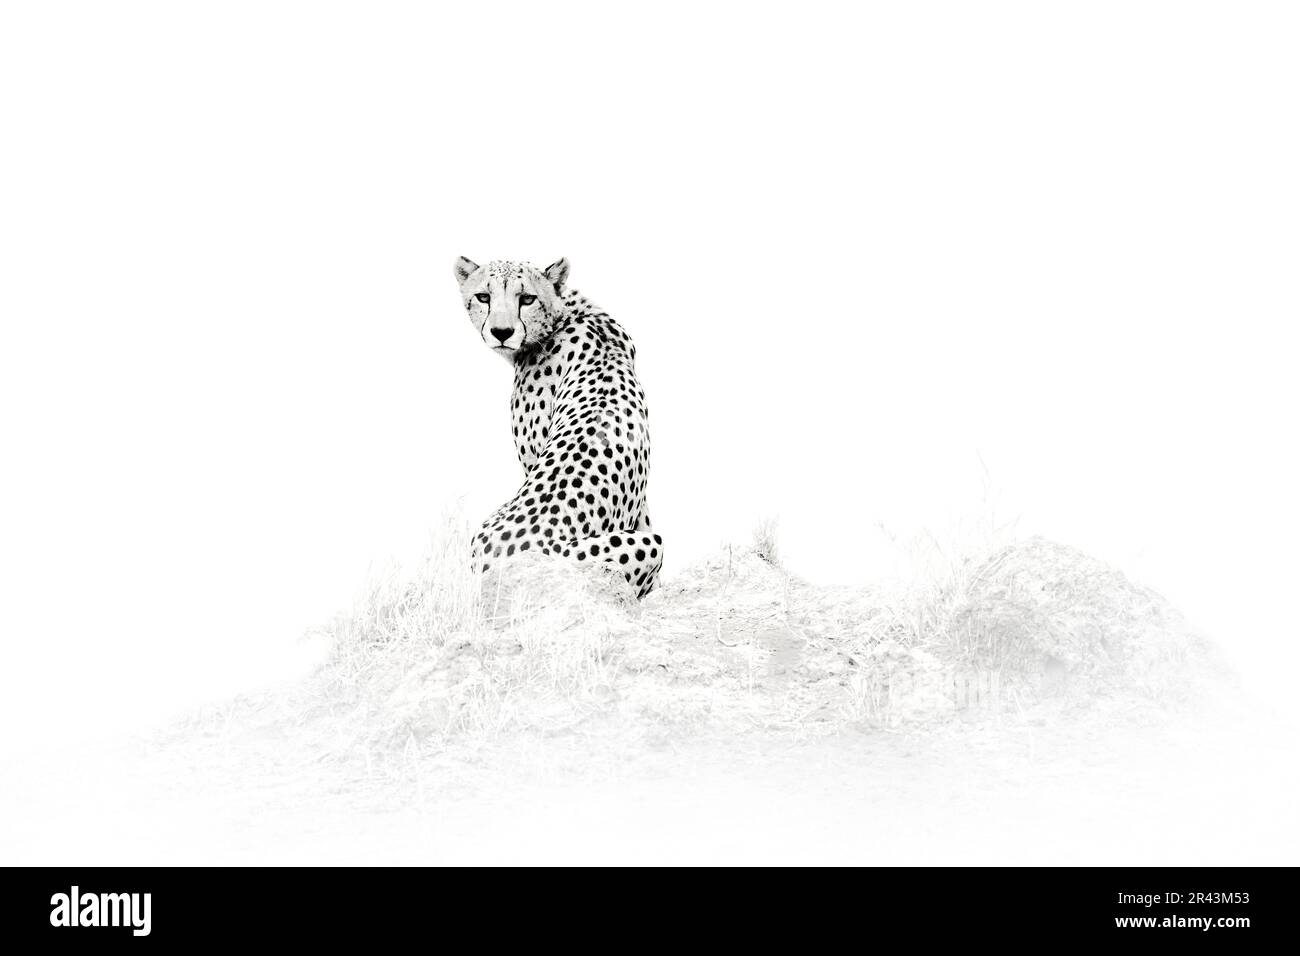 Cheetah - Schwarzweiß-Kunstfoto, Savuti, Chobe NP in Botsuana. Heiße Jahreszeit in Afrika. Afrikanischer Löwe, männlich. Botswanische Tierwelt. Cheetah, Feuer verbrannt Stockfoto